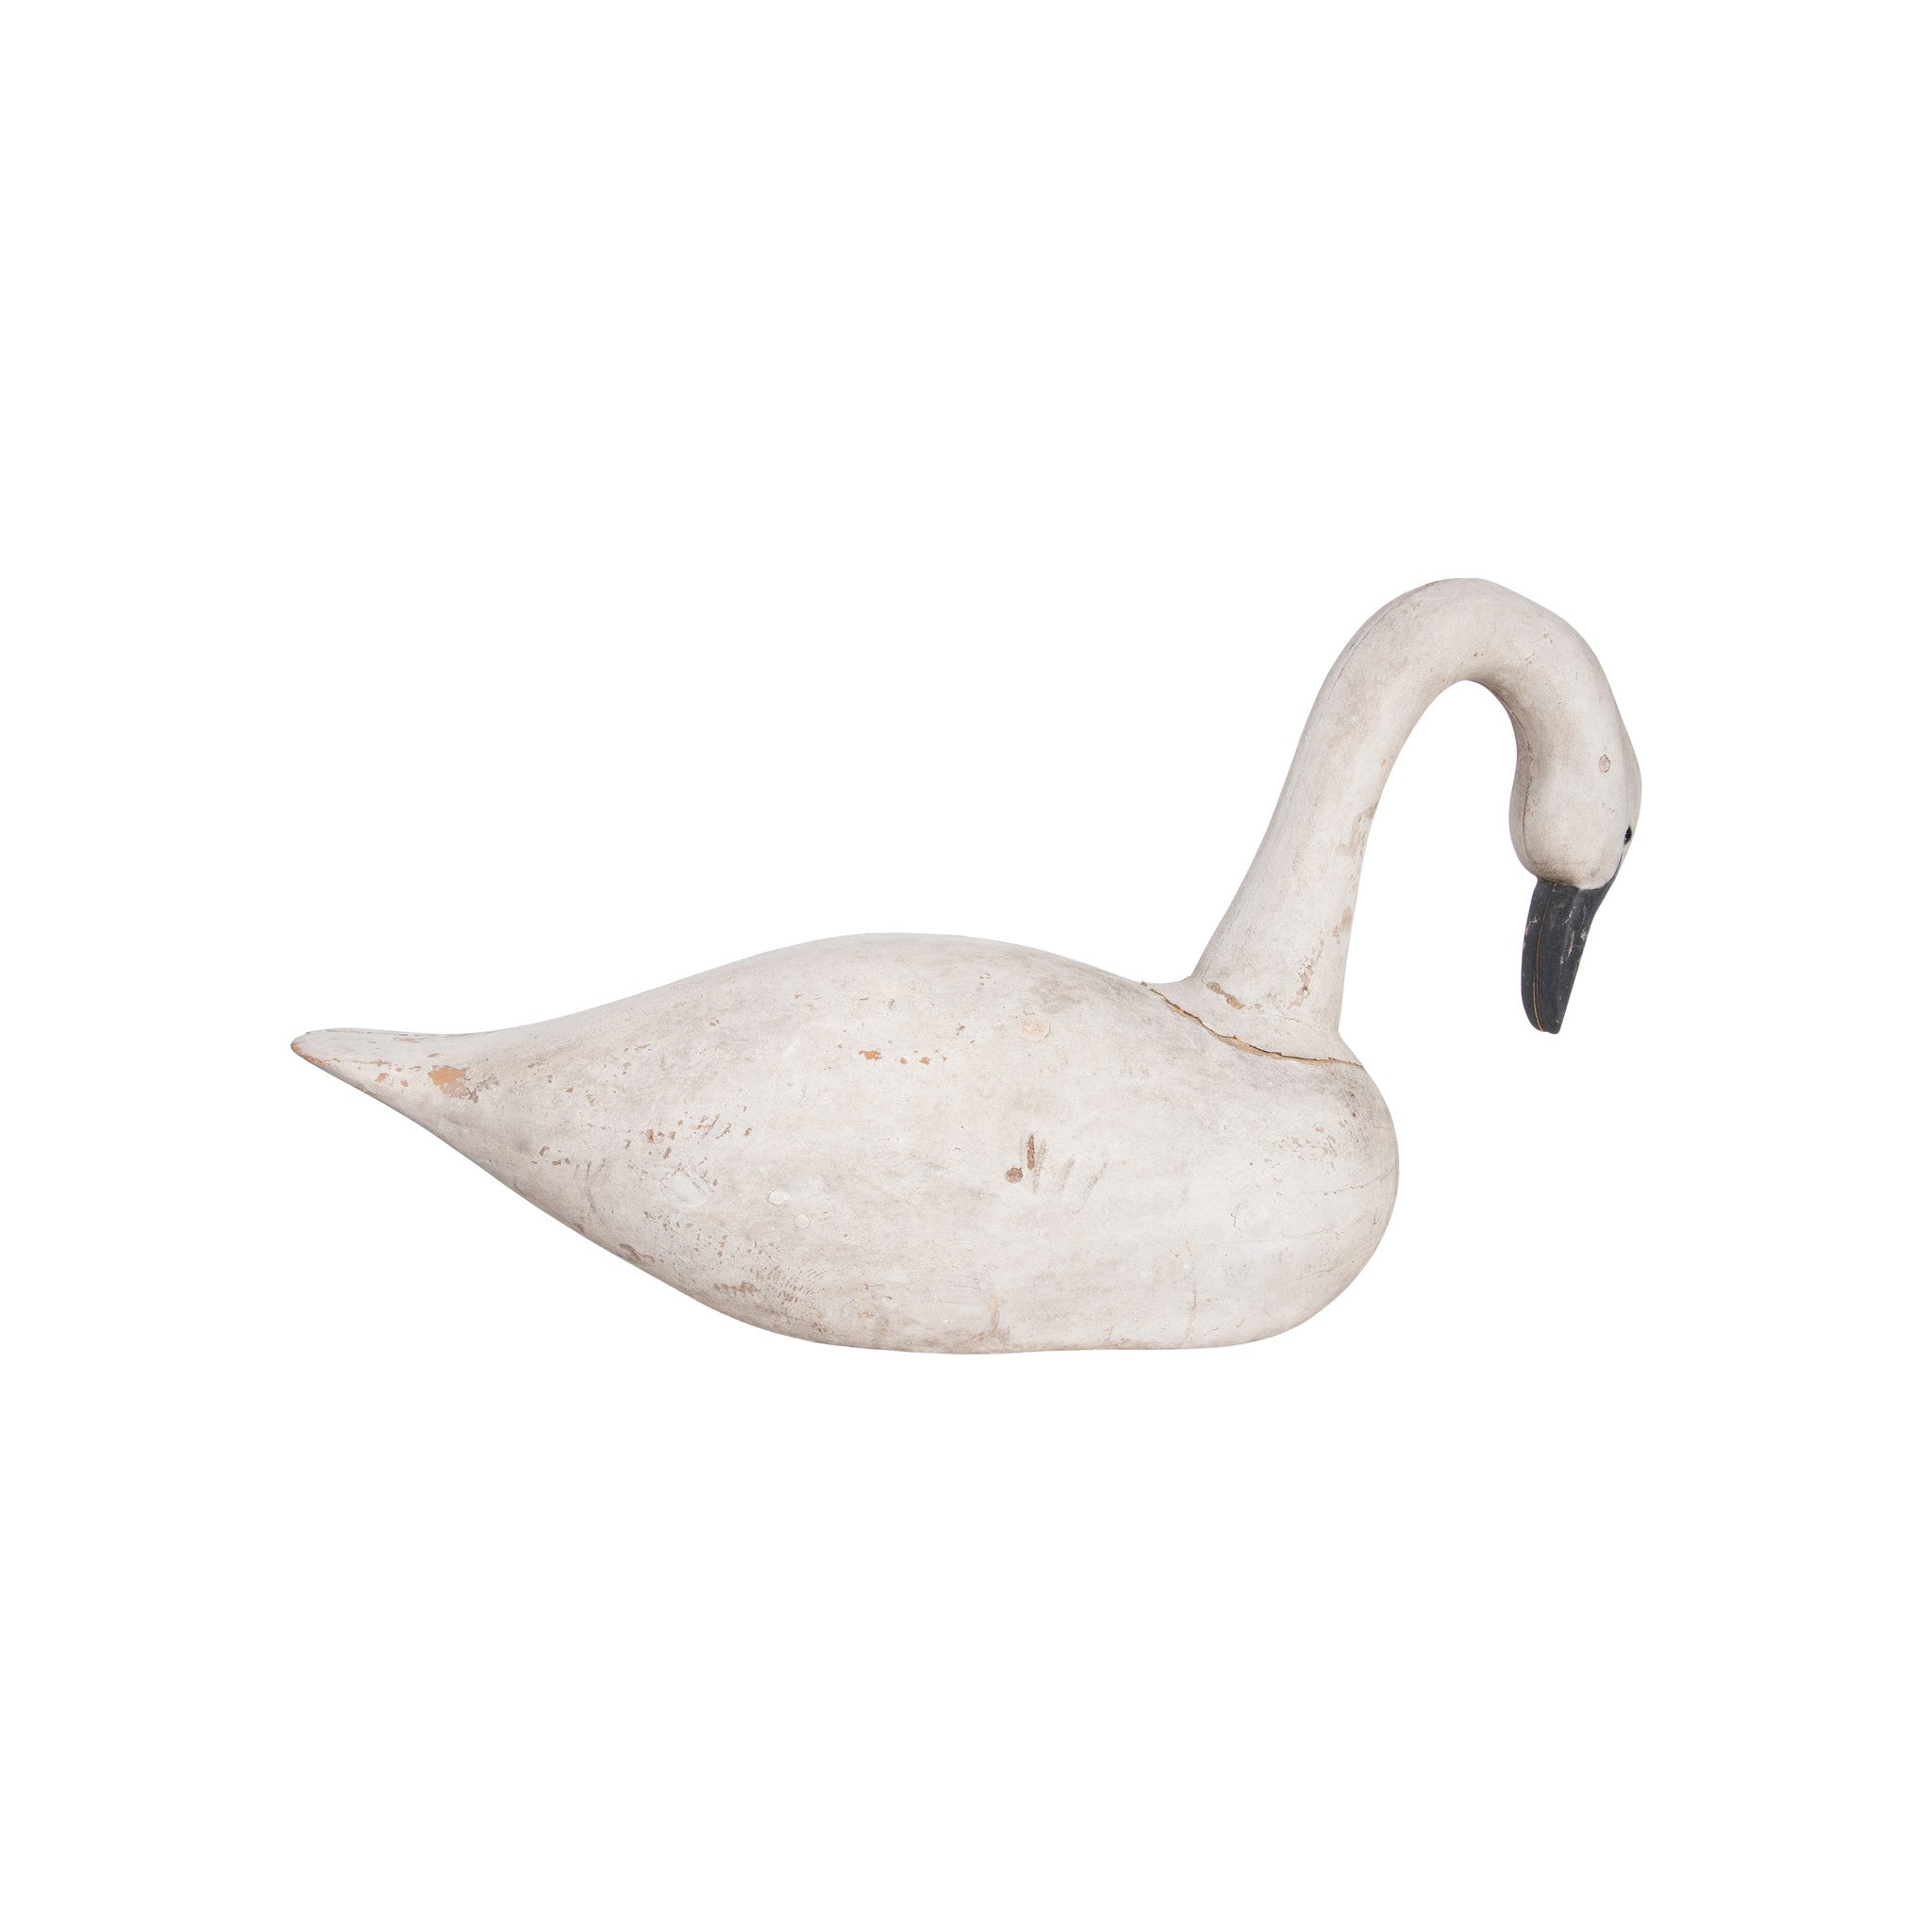 Hutch Swan Decoy